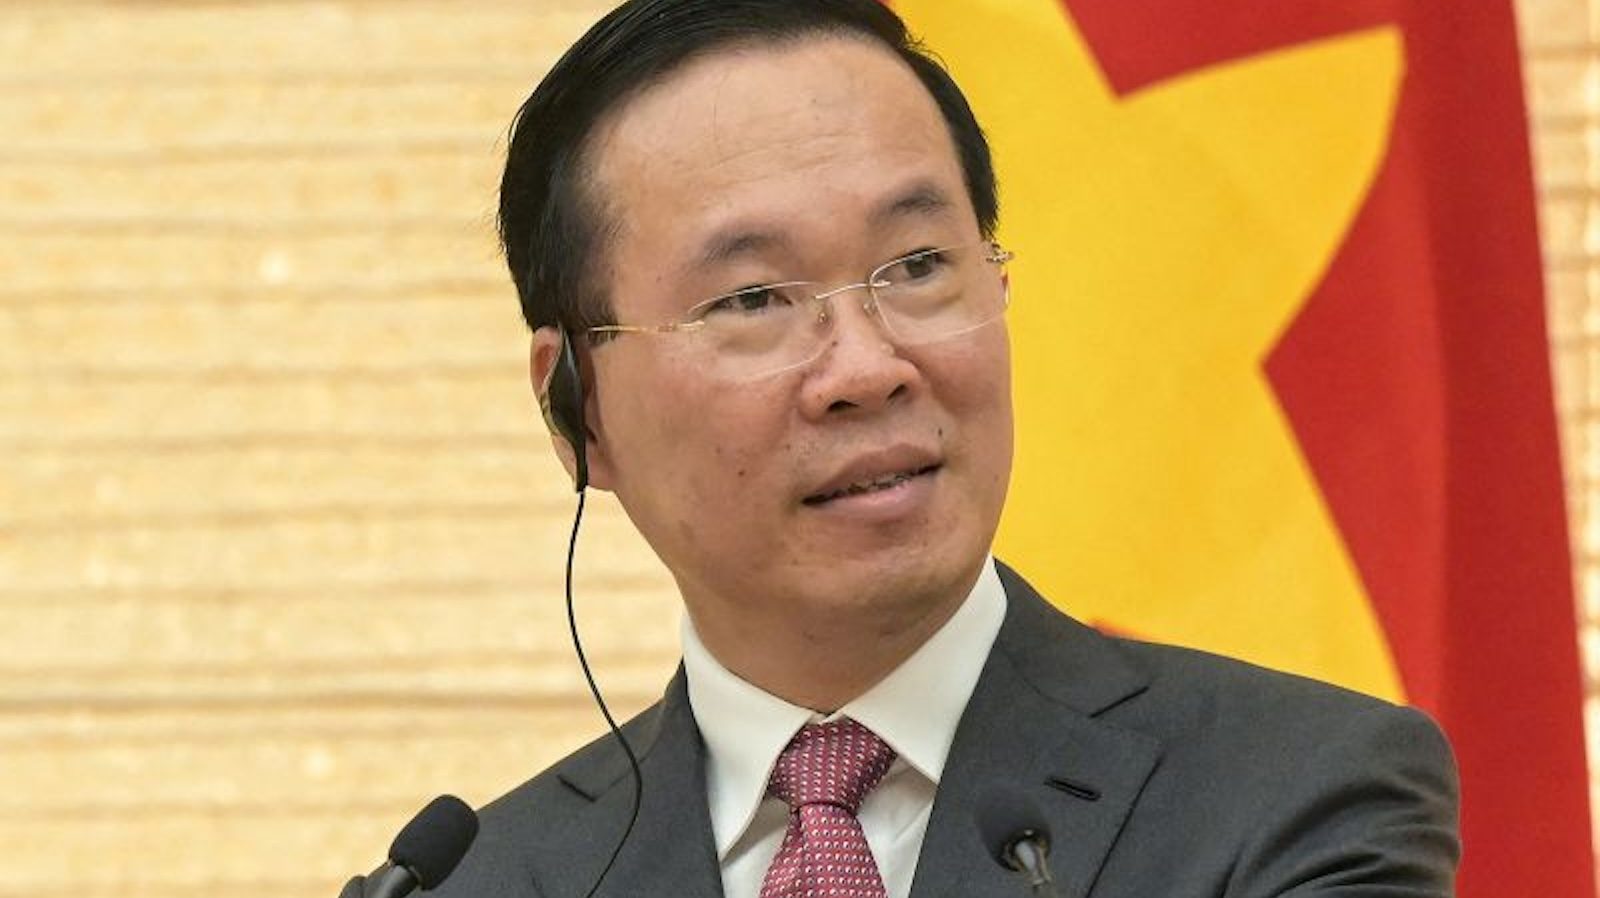 Dimite el presidente de Vietnam, planteando interrogantes sobre la
estabilidad del país